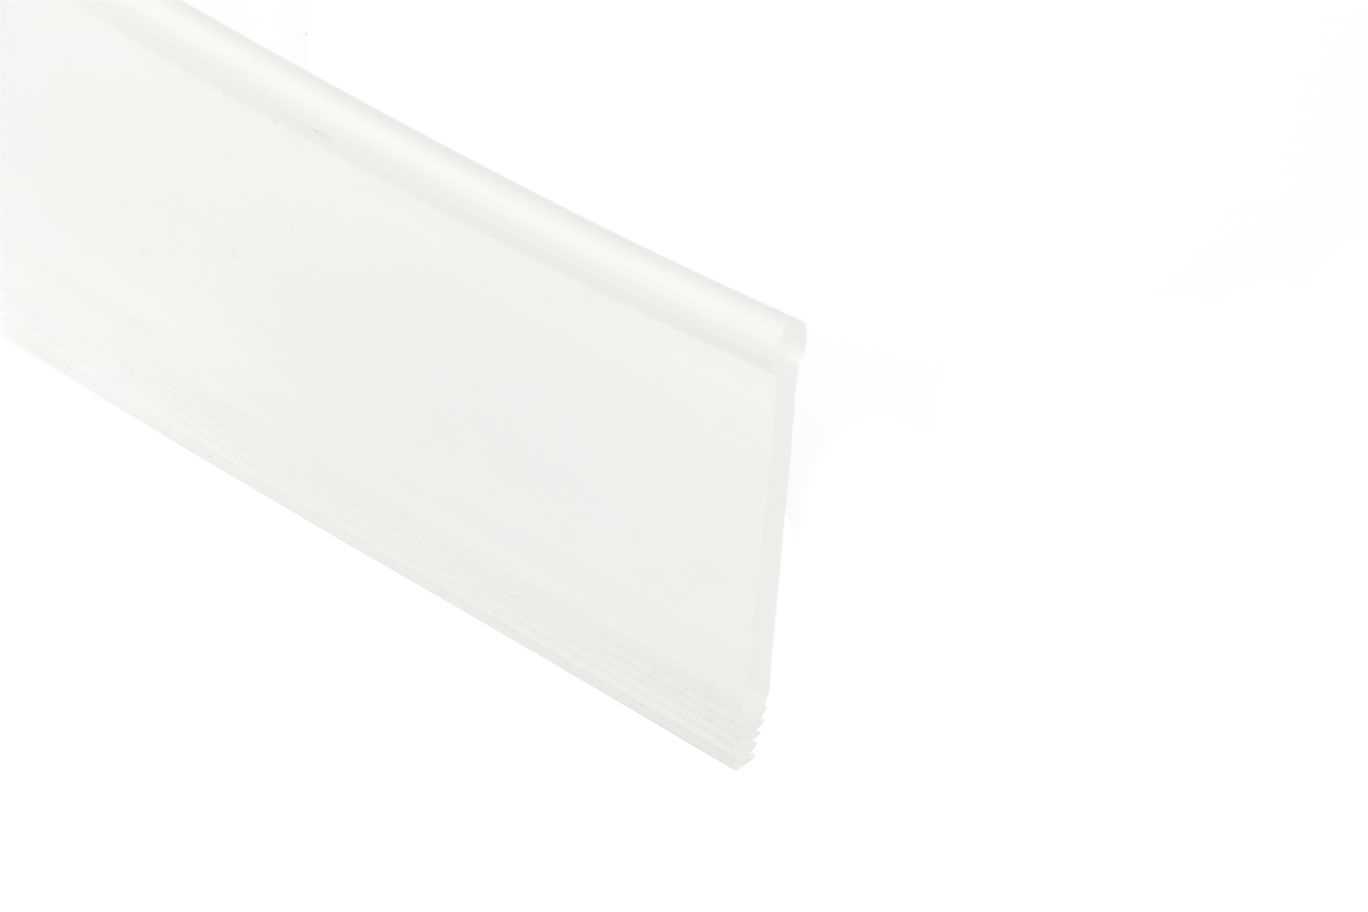 Schluter Showerprofile-Wsl Straight Lip Transp 3' 3" SPWSL30T/100